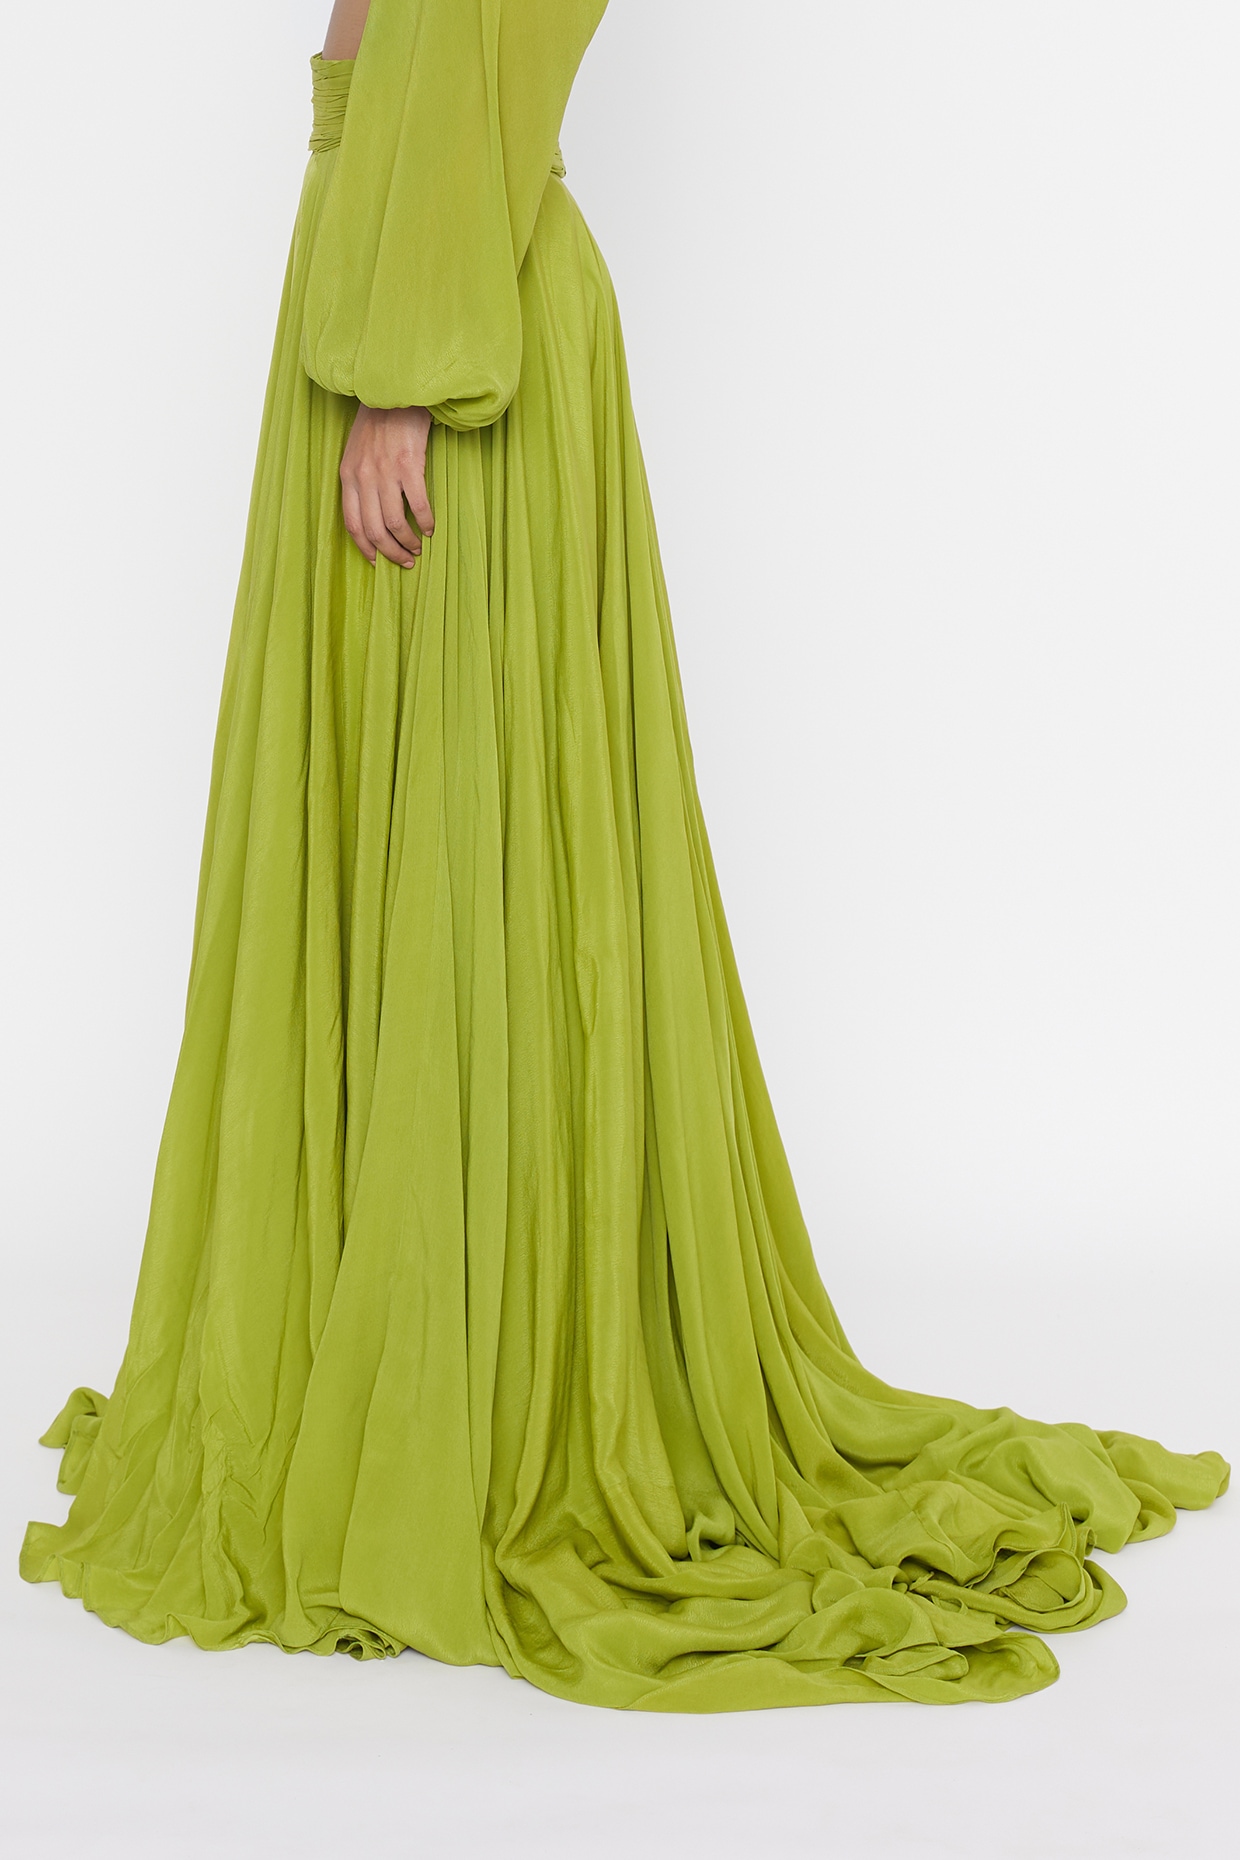 Demirner Women Gathered Light Green Dress - Buy Demirner Women Gathered  Light Green Dress Online at Best Prices in India | Flipkart.com